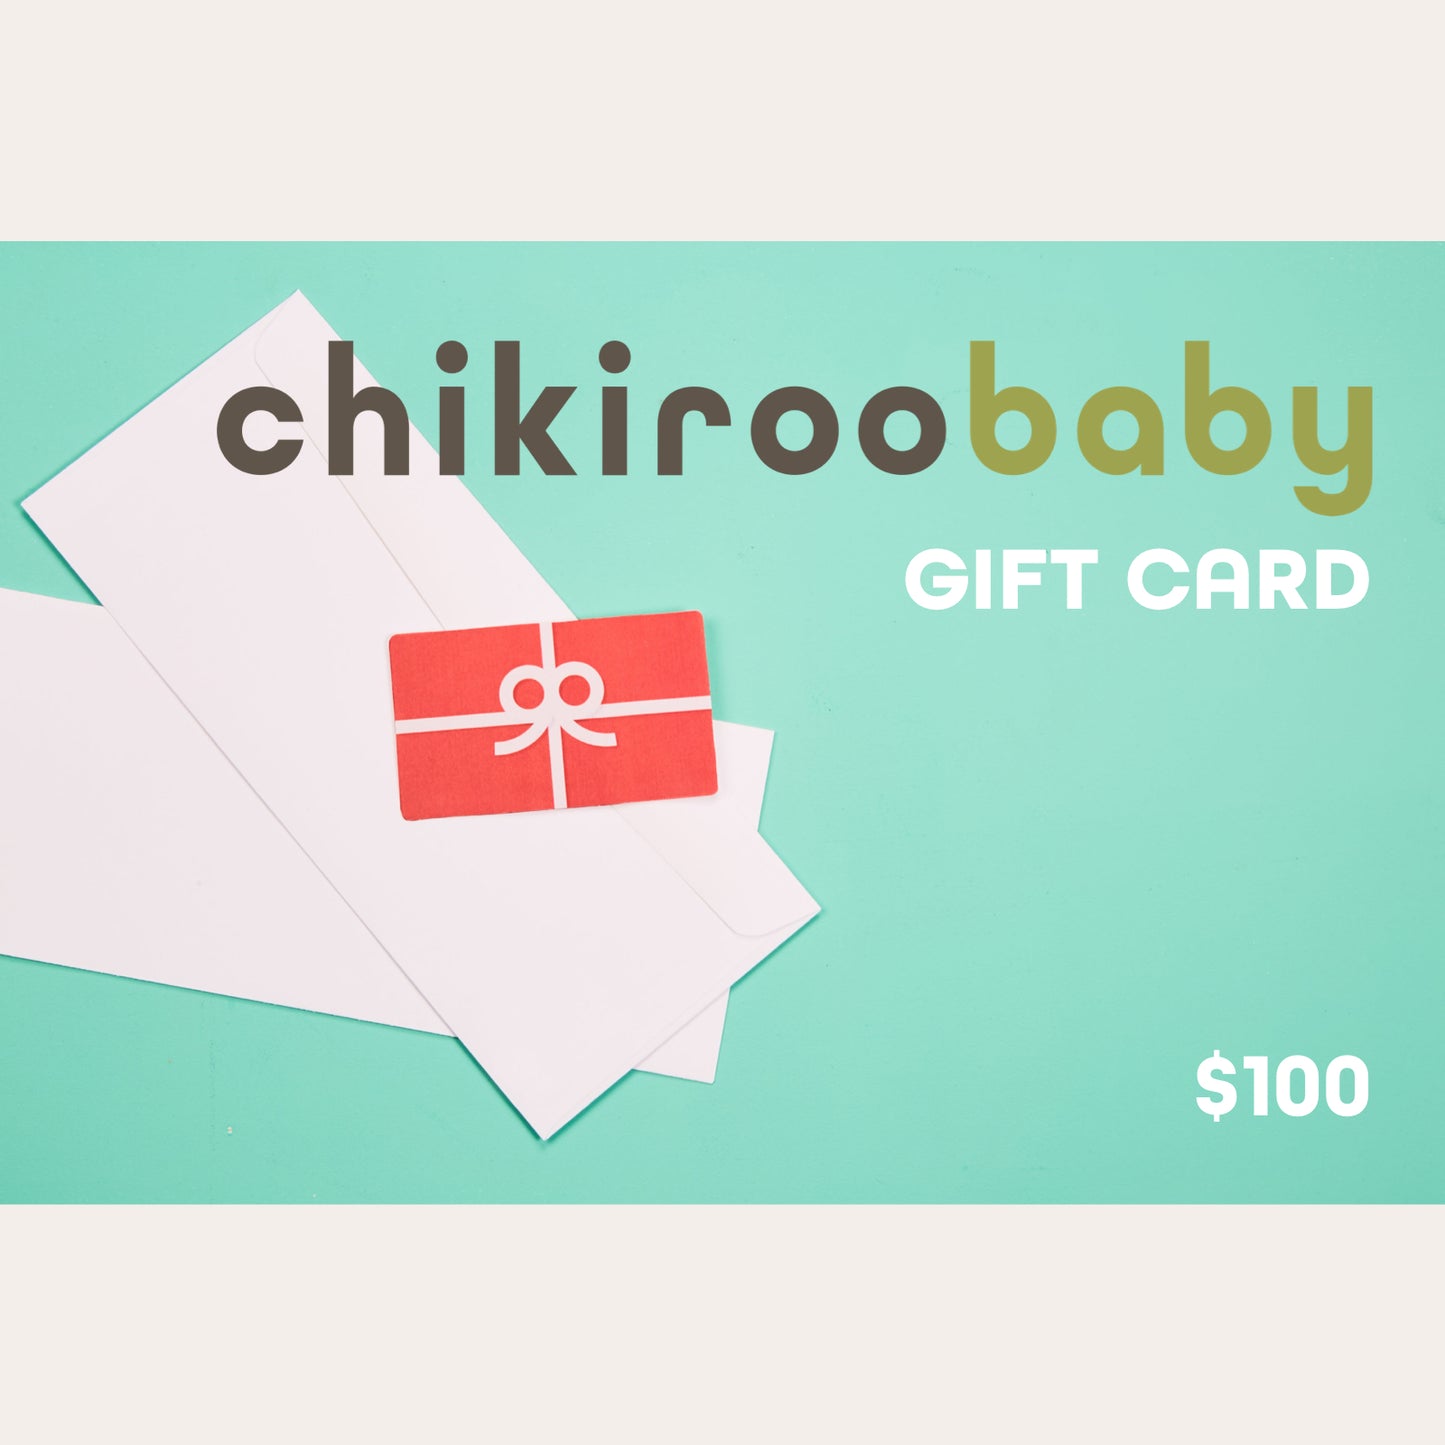 Chikiroo Baby Gift Card